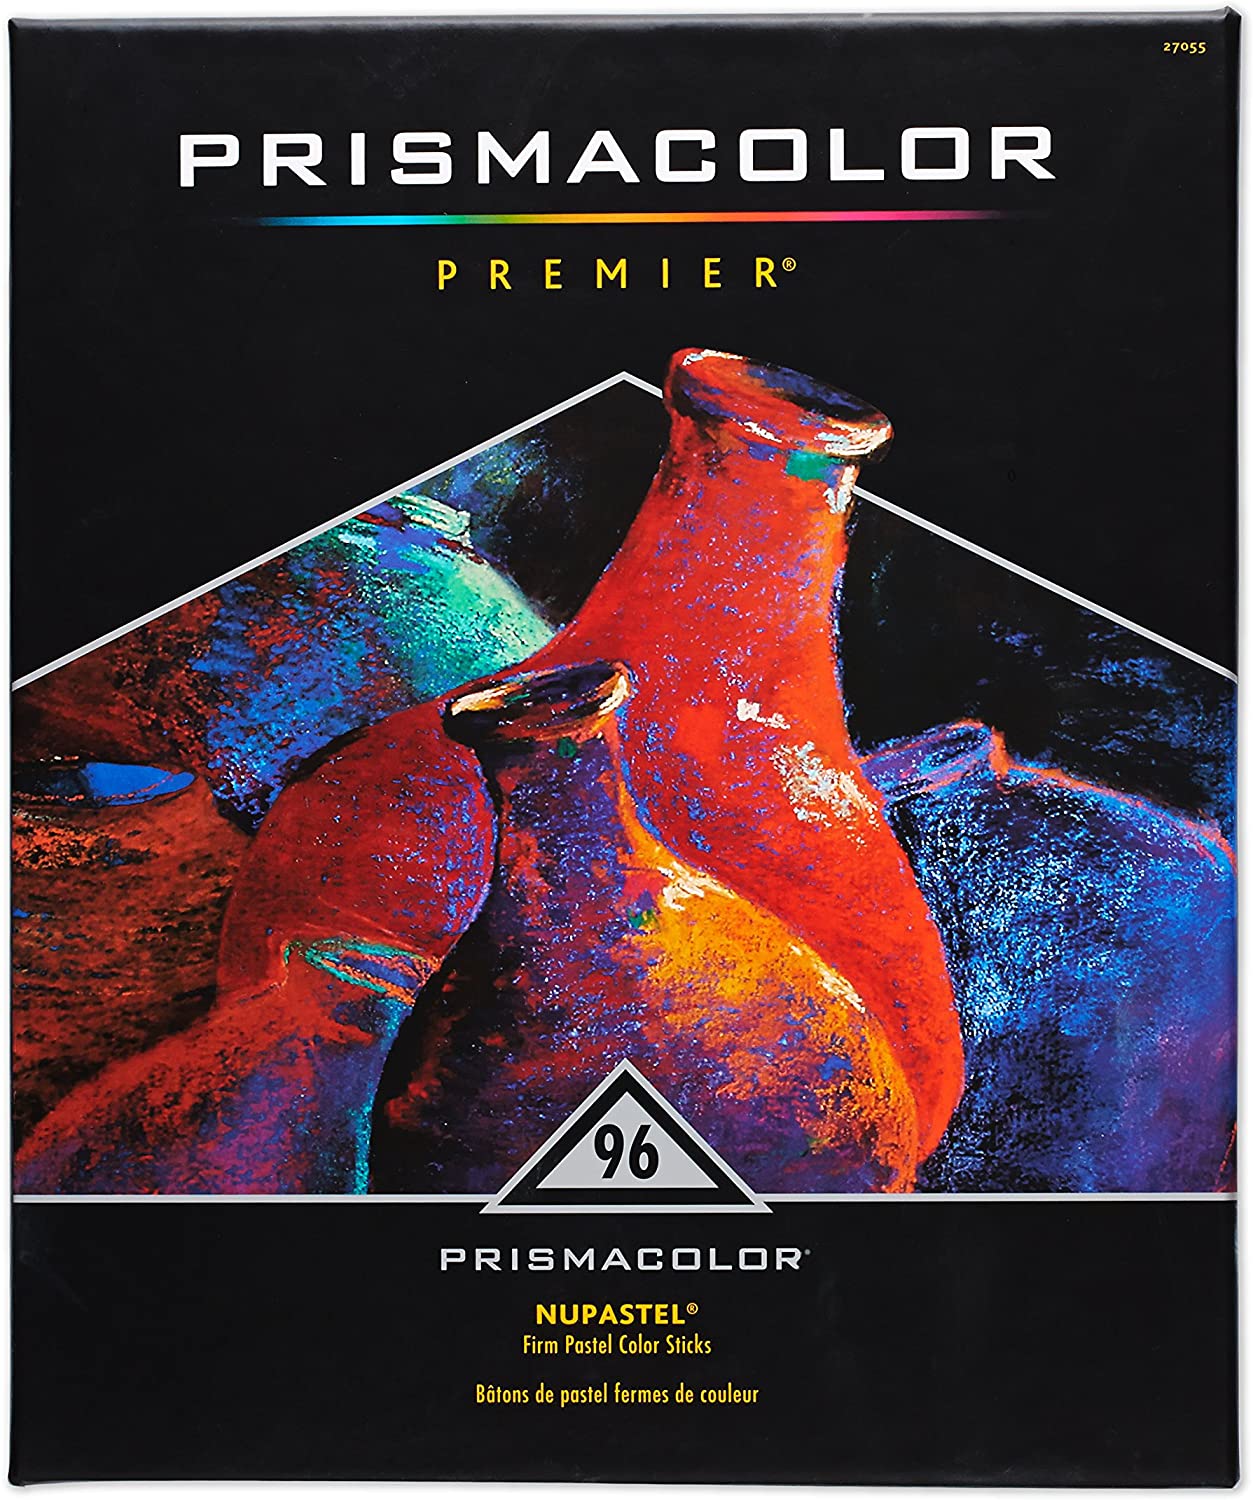 Prismacolor 27055 Premier NuPastel Firm Pastel Color Sticks front part